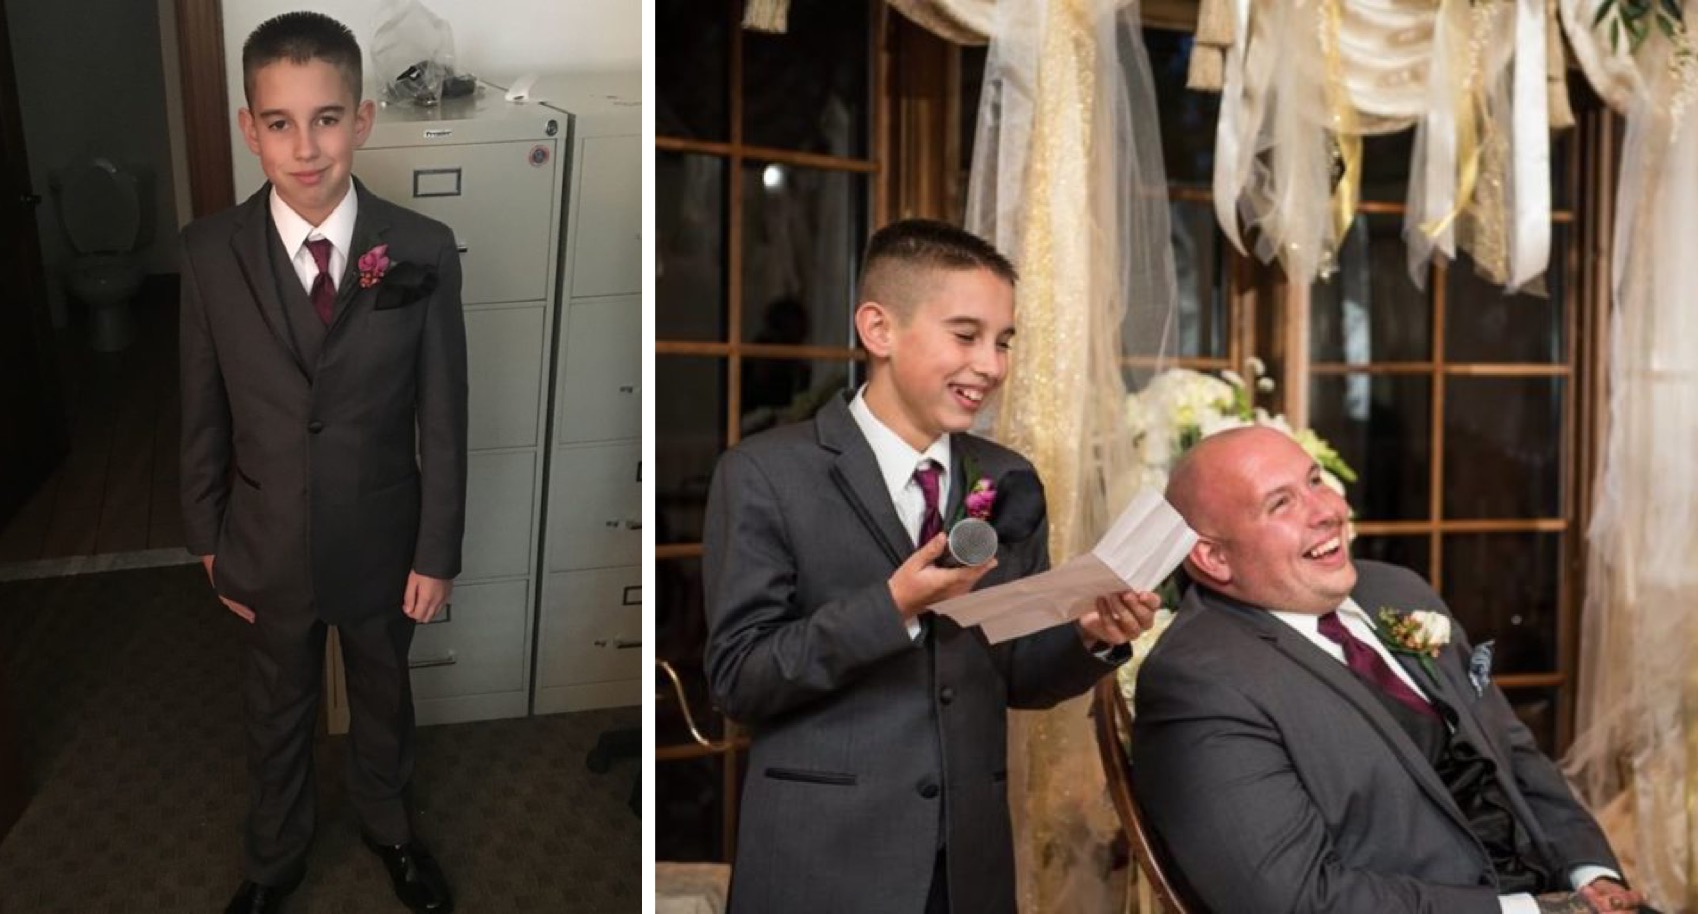 10-Yr-Old's Best Man Speech Steals the Show at Dad's Wedding